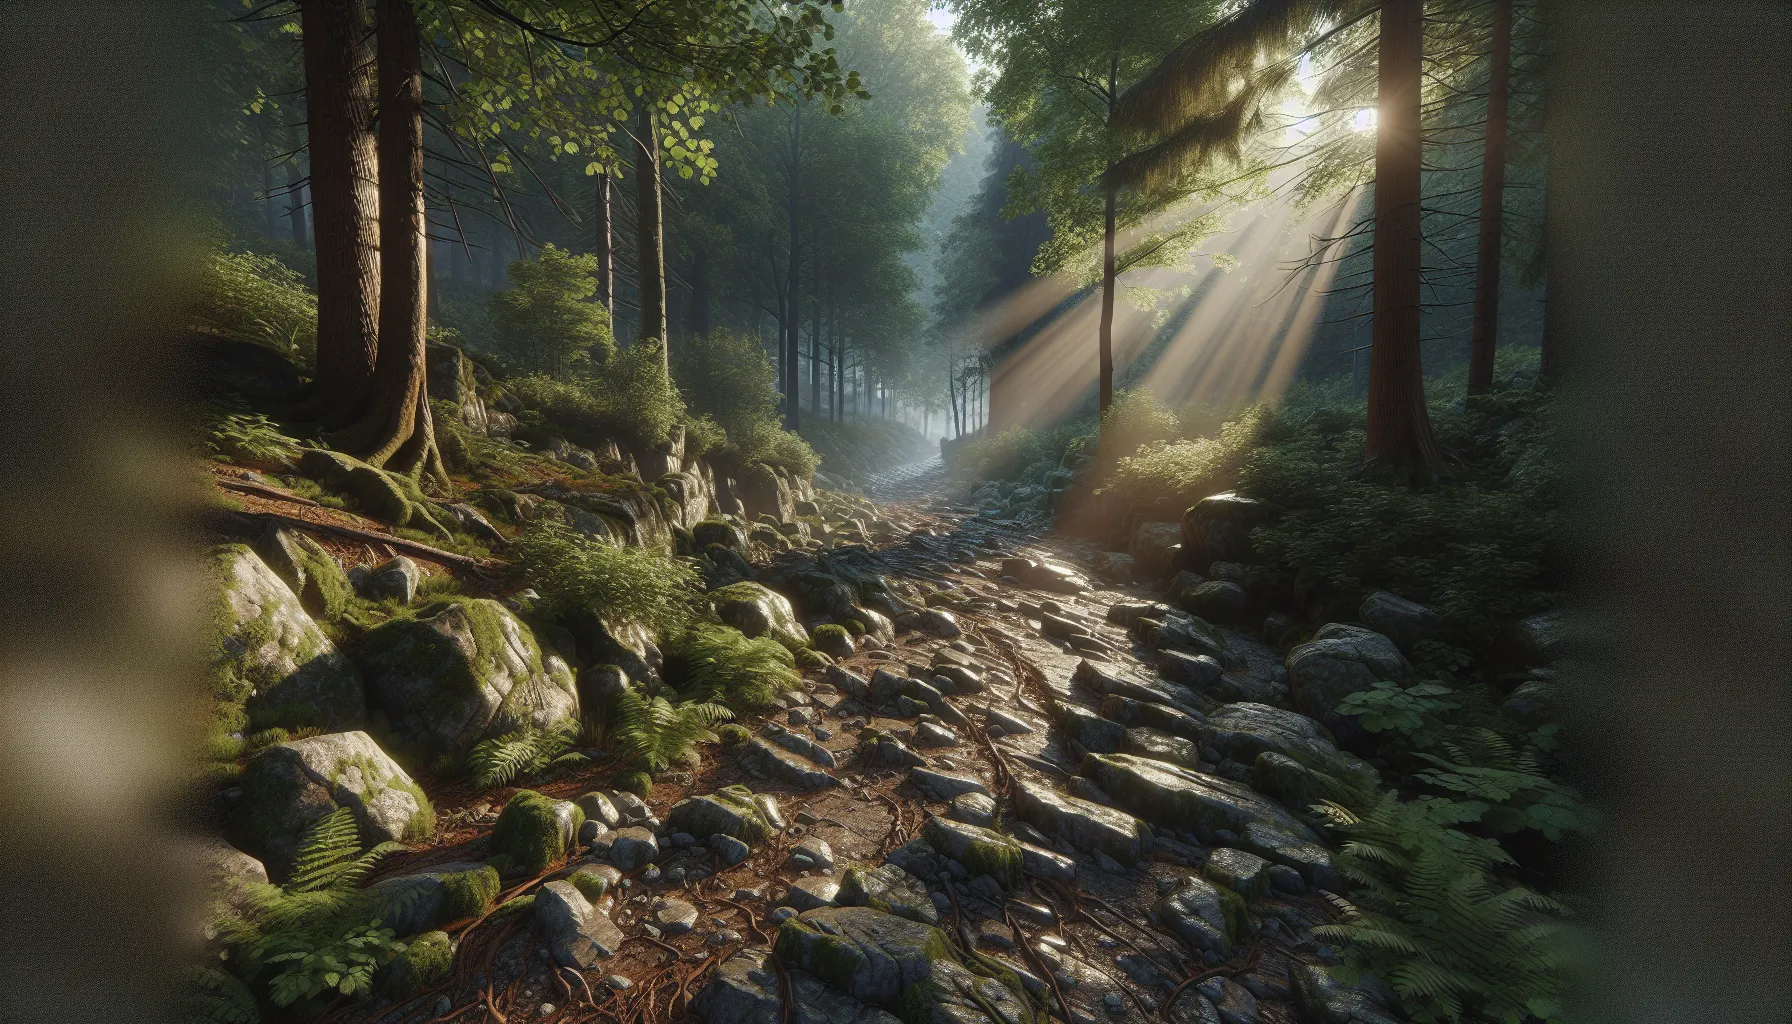 Imagen de un camino rocoso en medio de un bosque con rayos de sol filtrándose a través de los árboles.